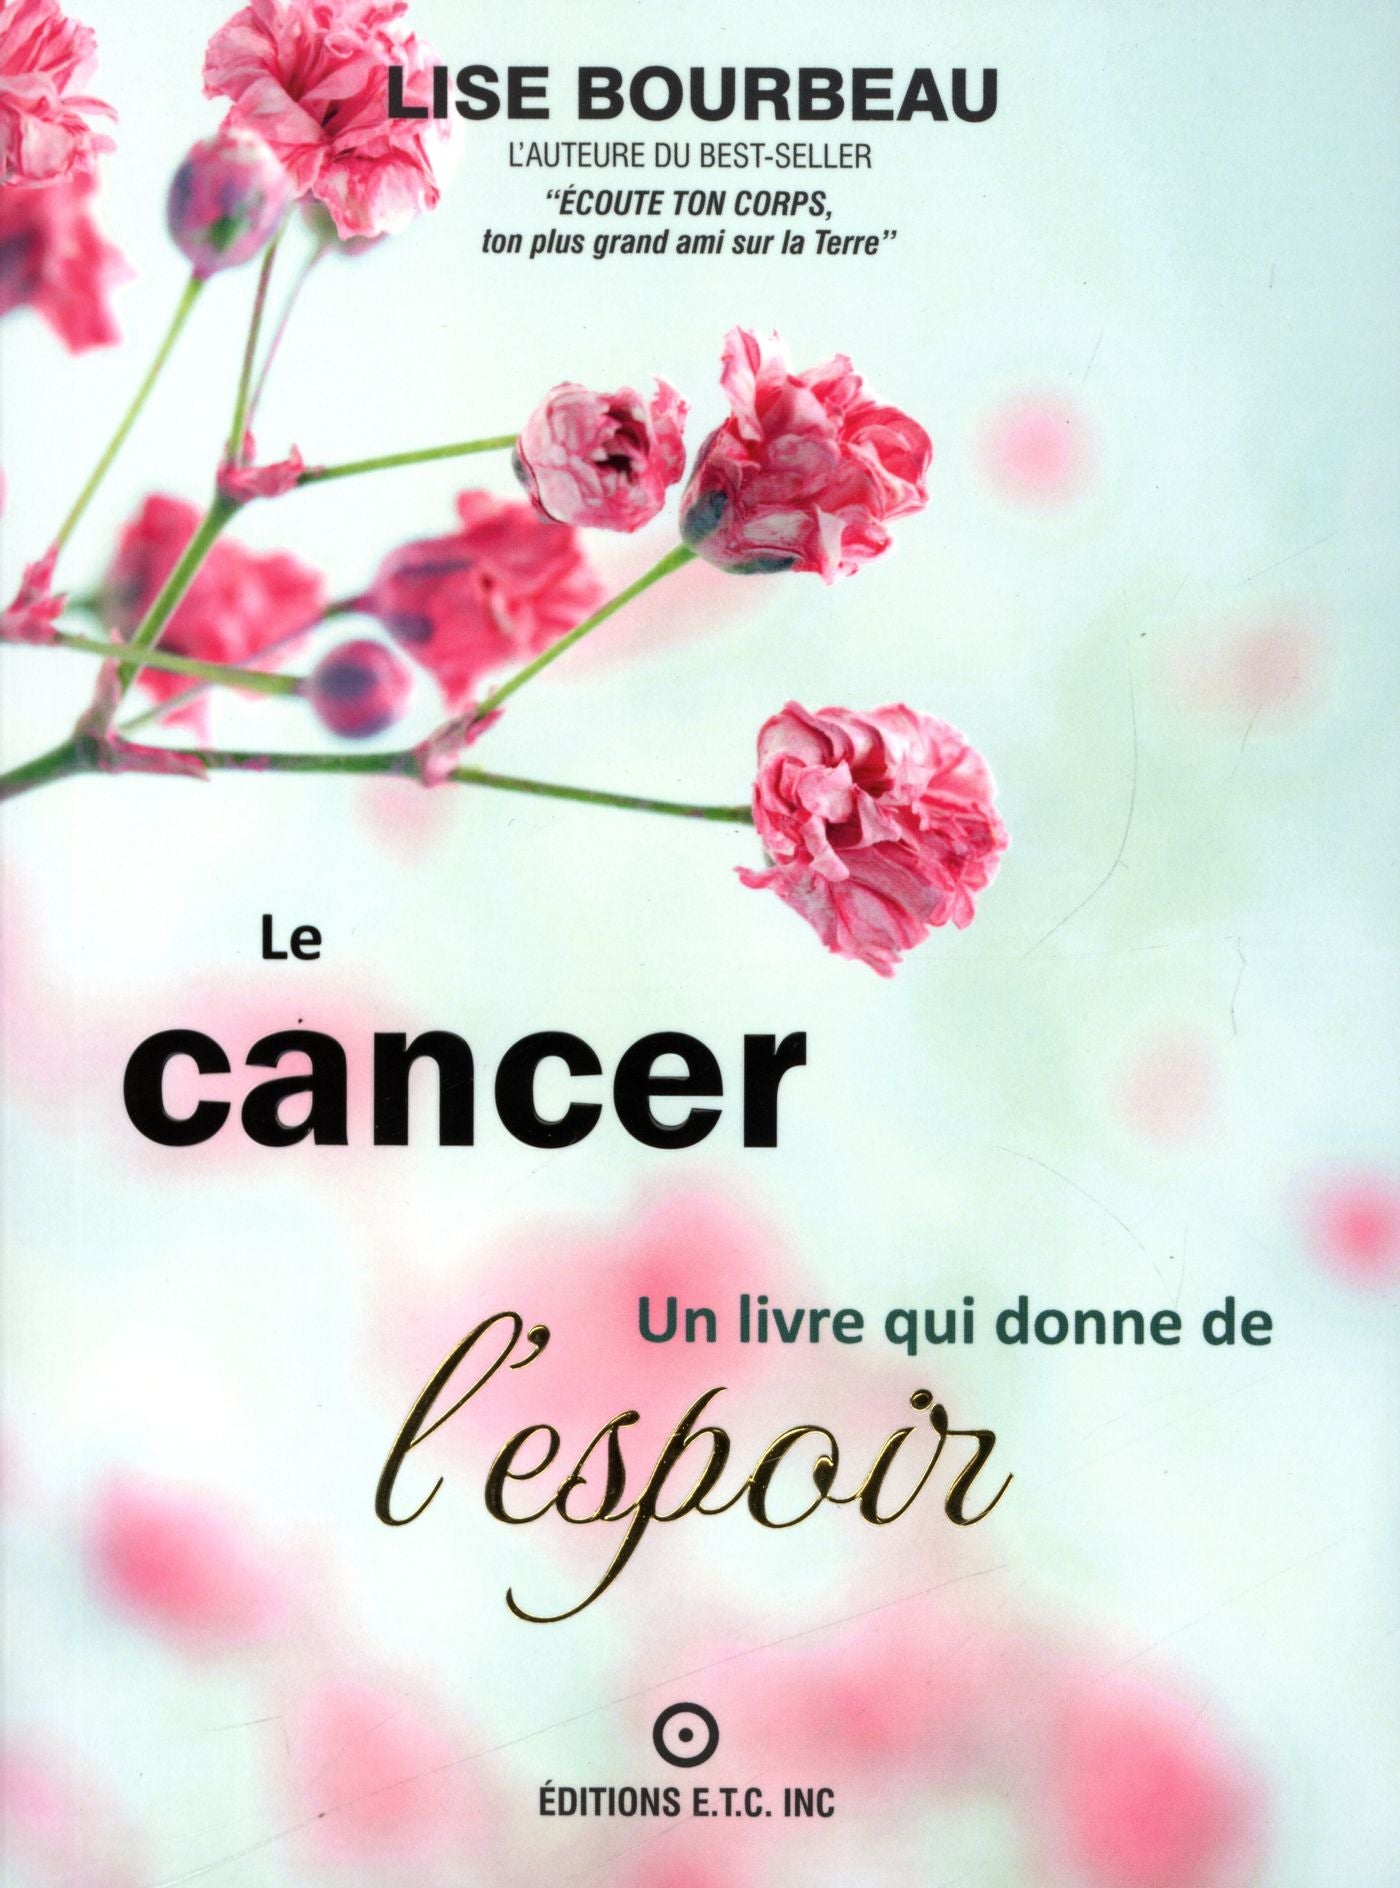 Le cancer, Un livre qui donne de l'espoir - Lise Bourbeau